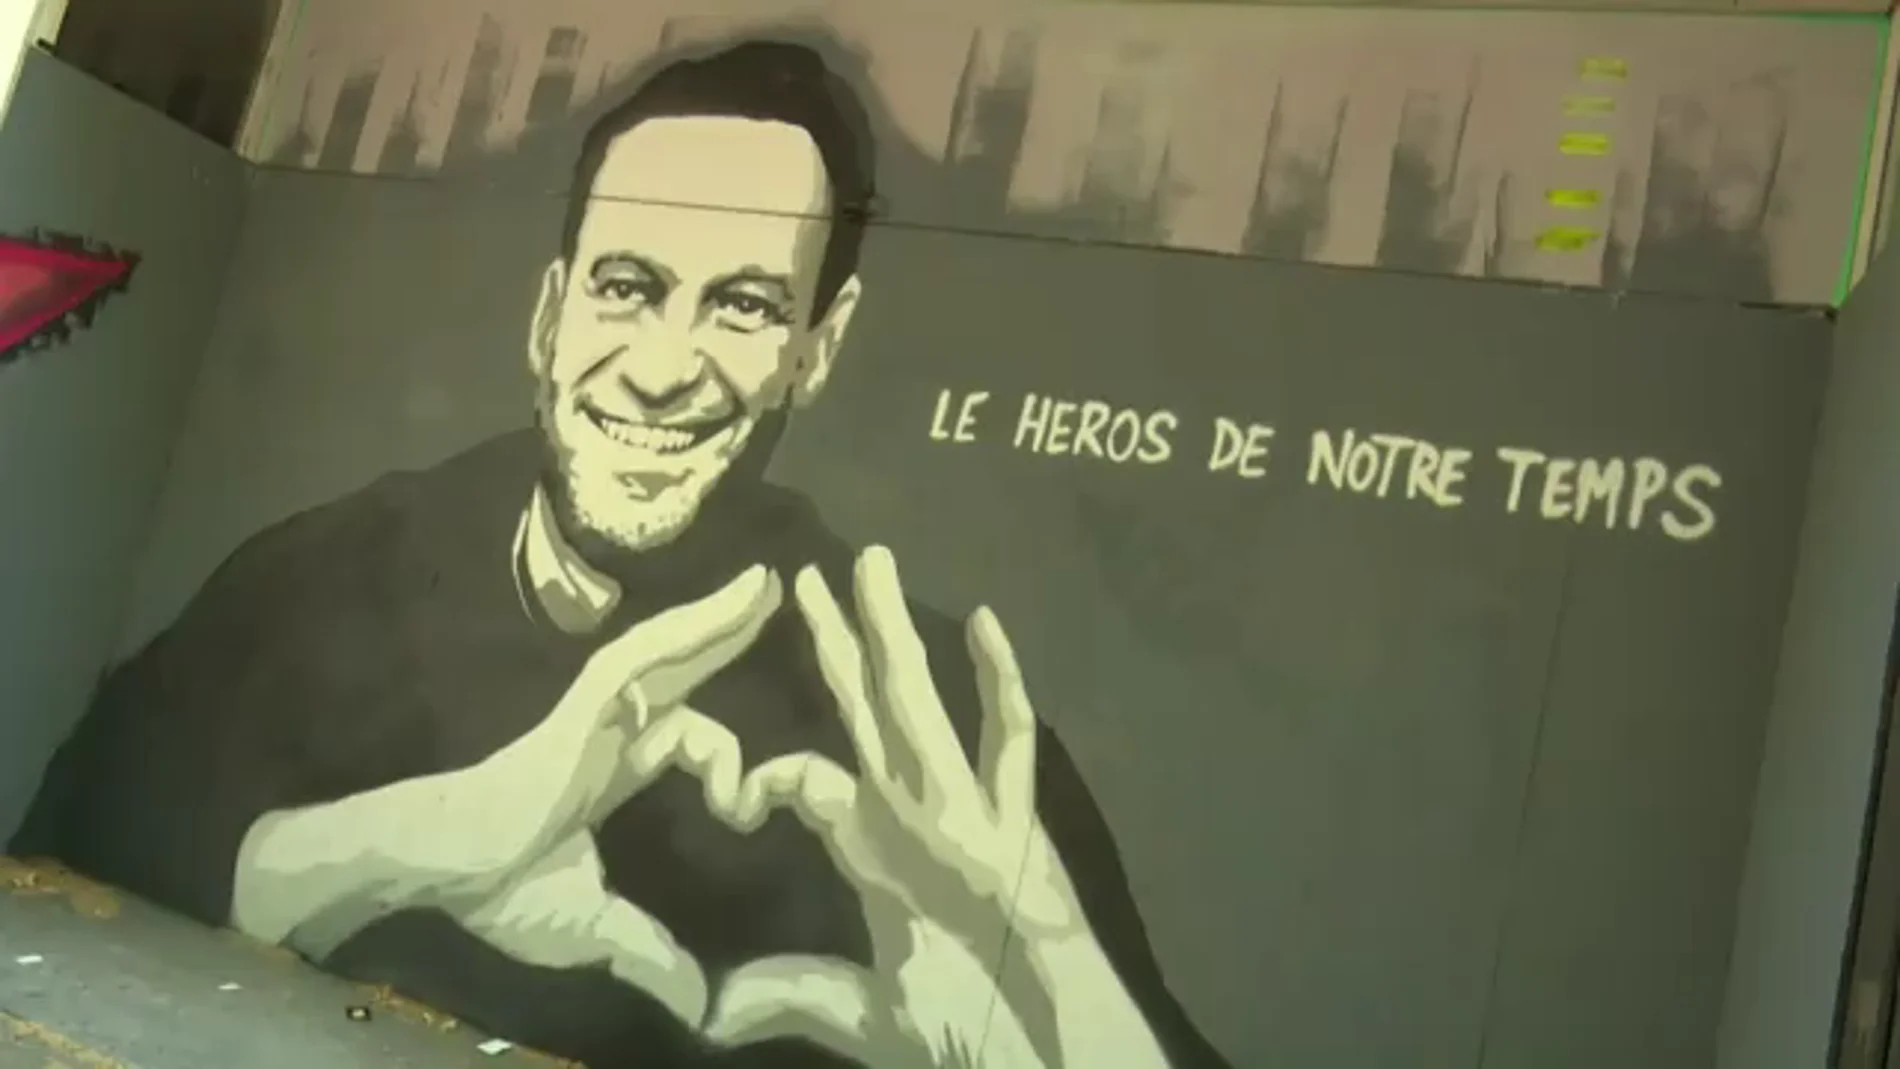 "Héroe de nuestro tiempo": El grafiti sobre Navalny con el que Ginebra ha recibido a Putin